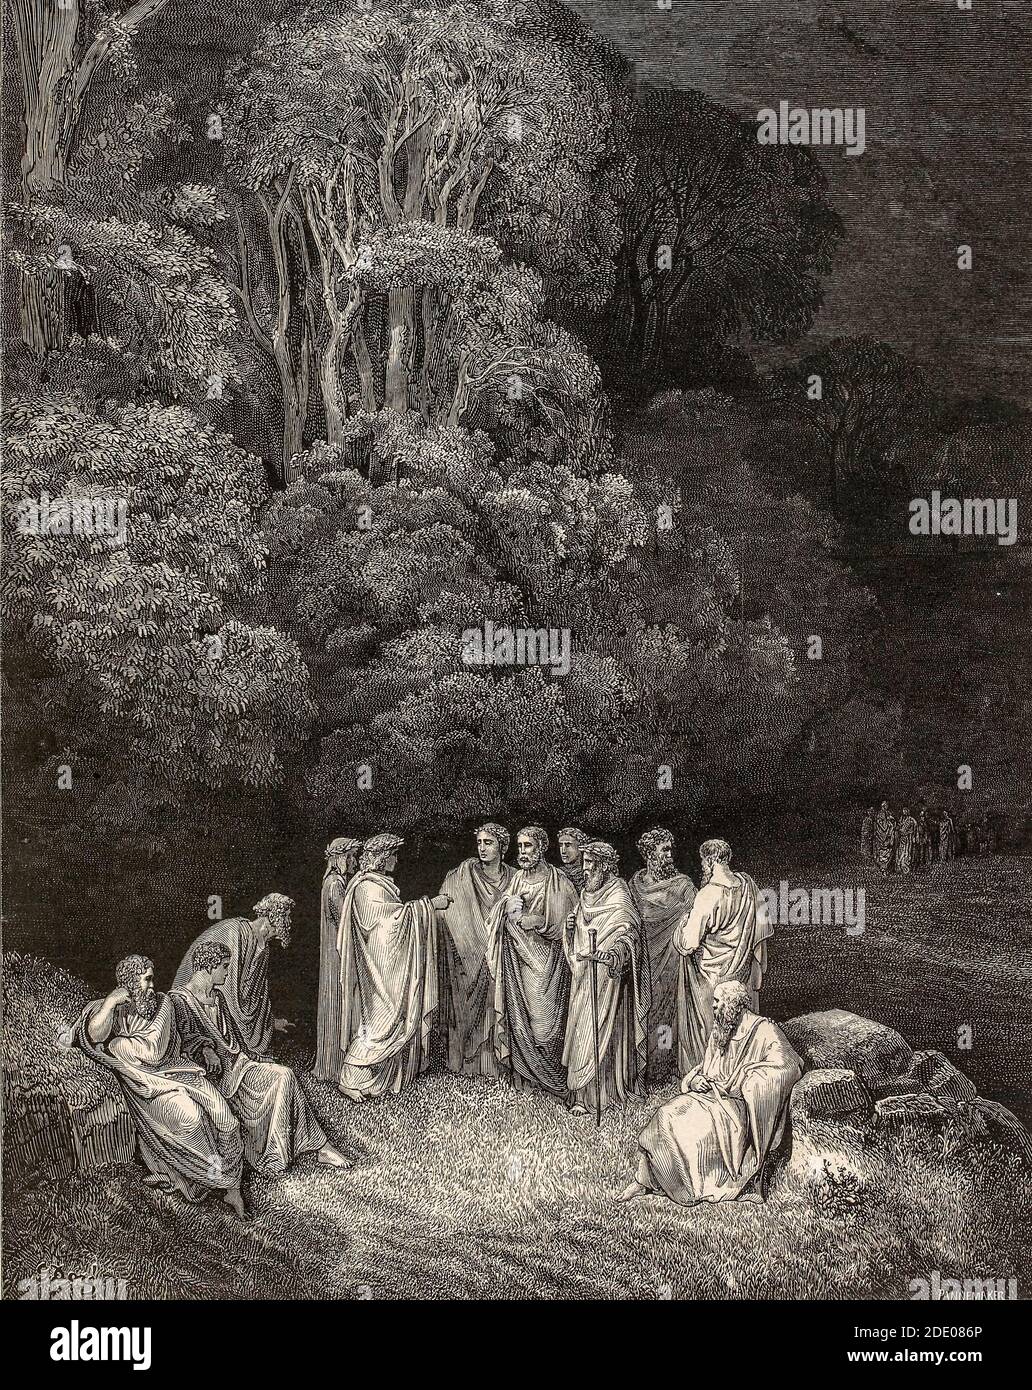 Dante Divina Commedia - Infierno - Dante se encuentra con lo grande Poetas antiguos - ilustración de Gustave Dorè Foto de stock